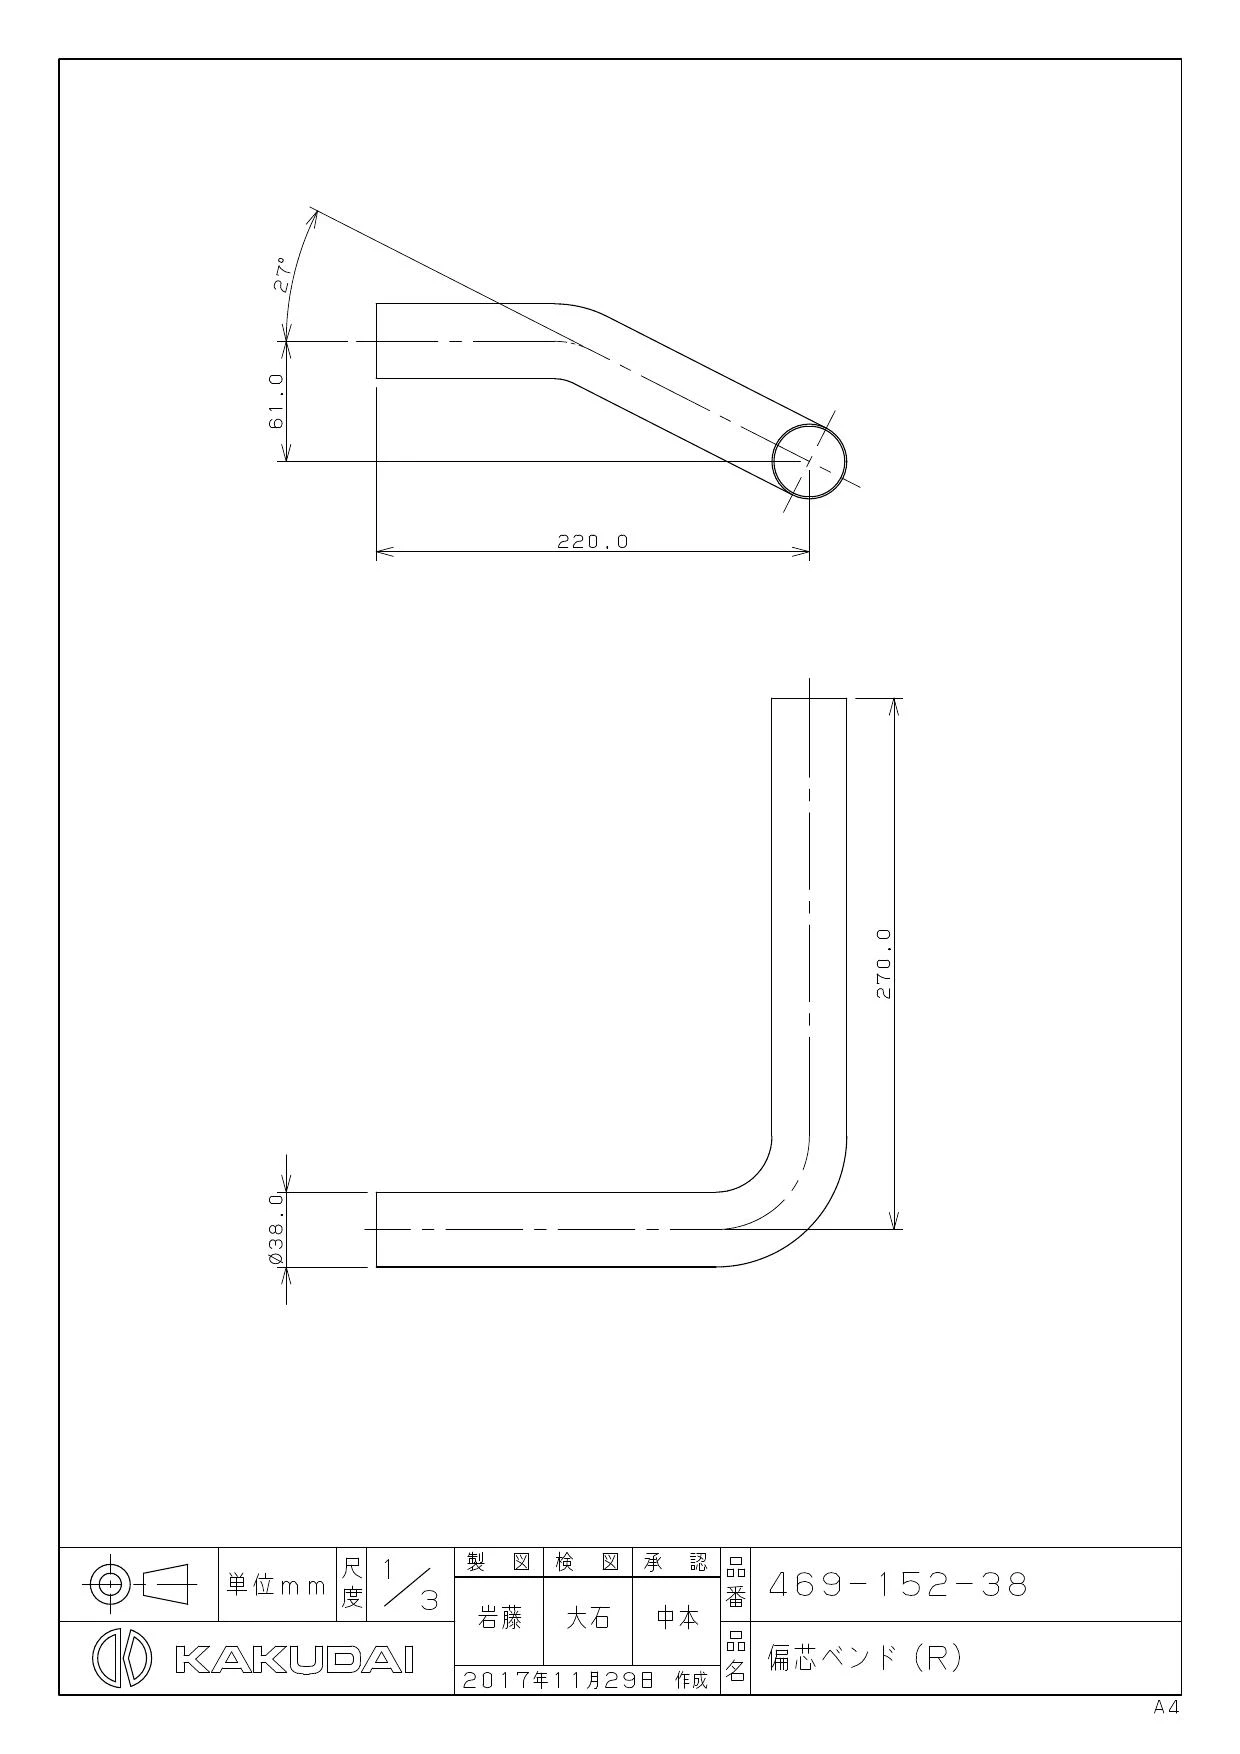 469-152-38 商品図面|カクダイ トイレ部品の通販はプロストア ダイレクト